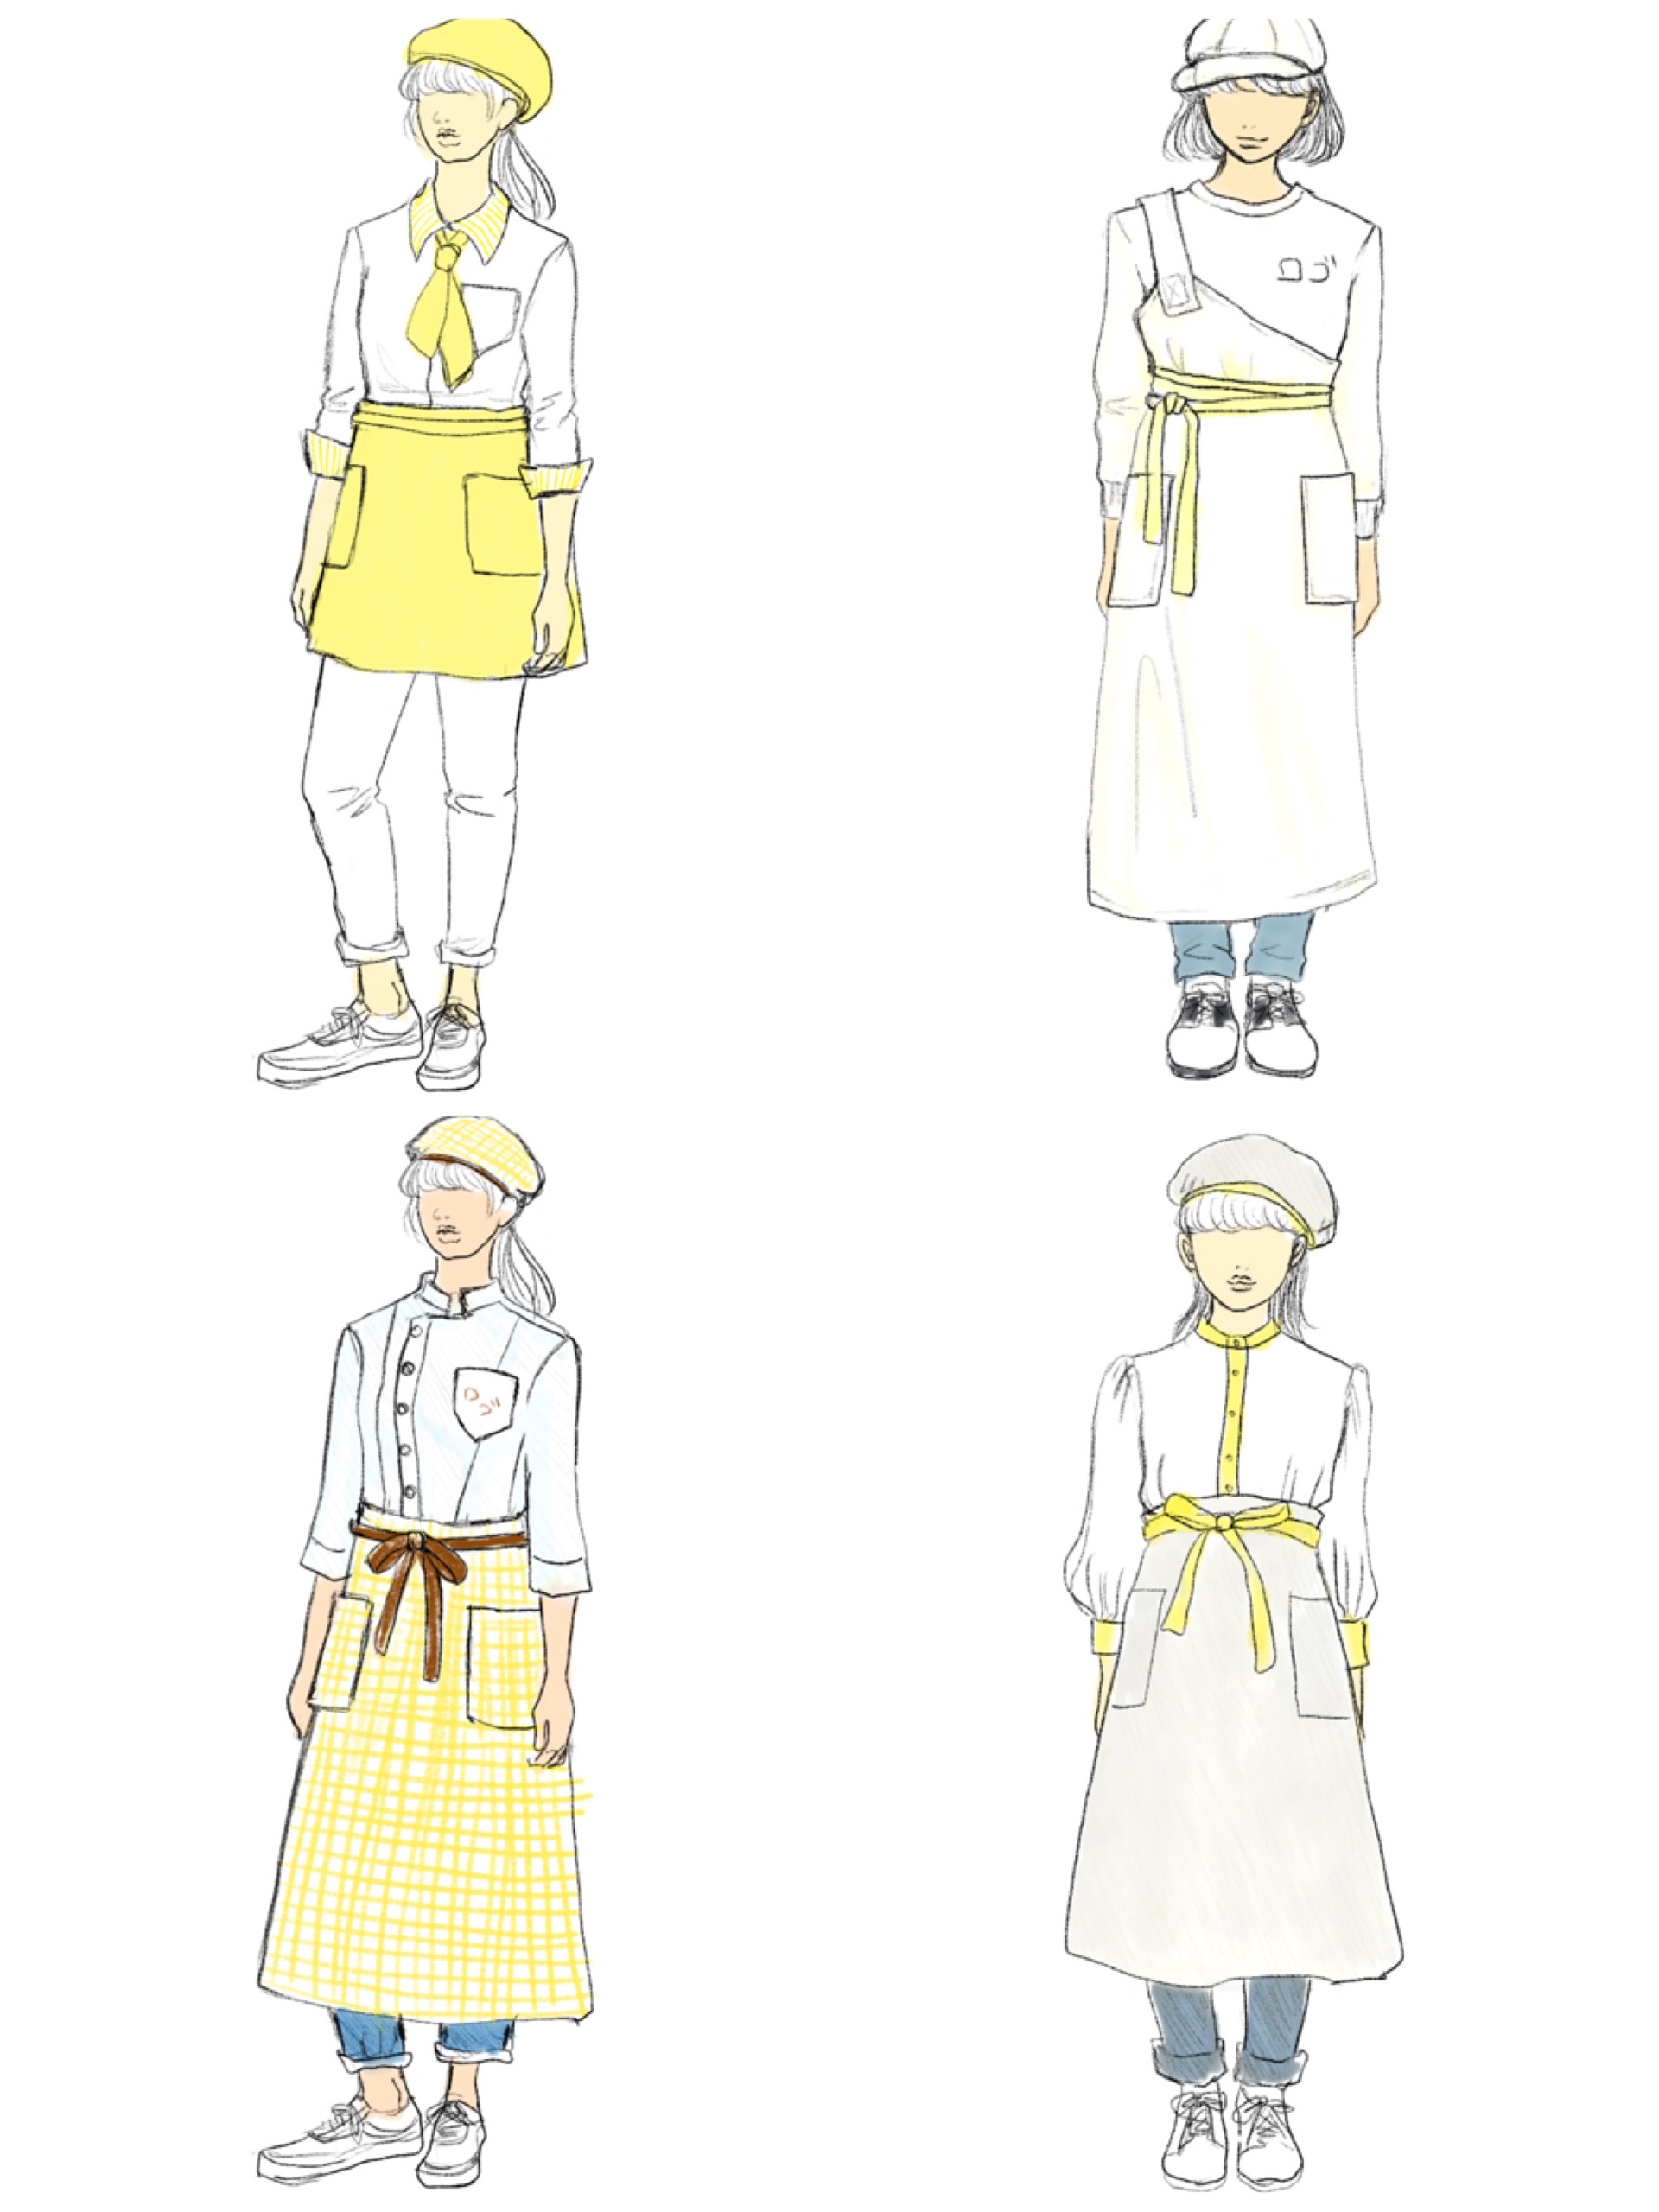 パン屋さんの制服デザインのお仕事をいただいた時の話 ファッションイラストとデザイン